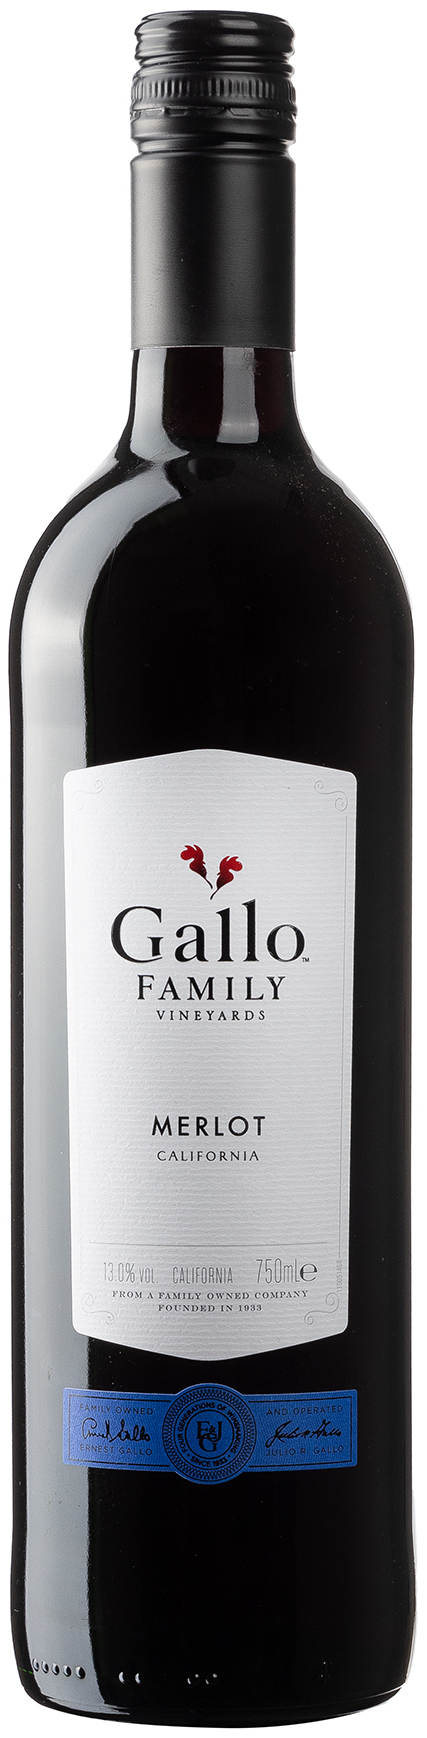 Gallo Family Merlot halbtrocken 13% vol. 0,75L